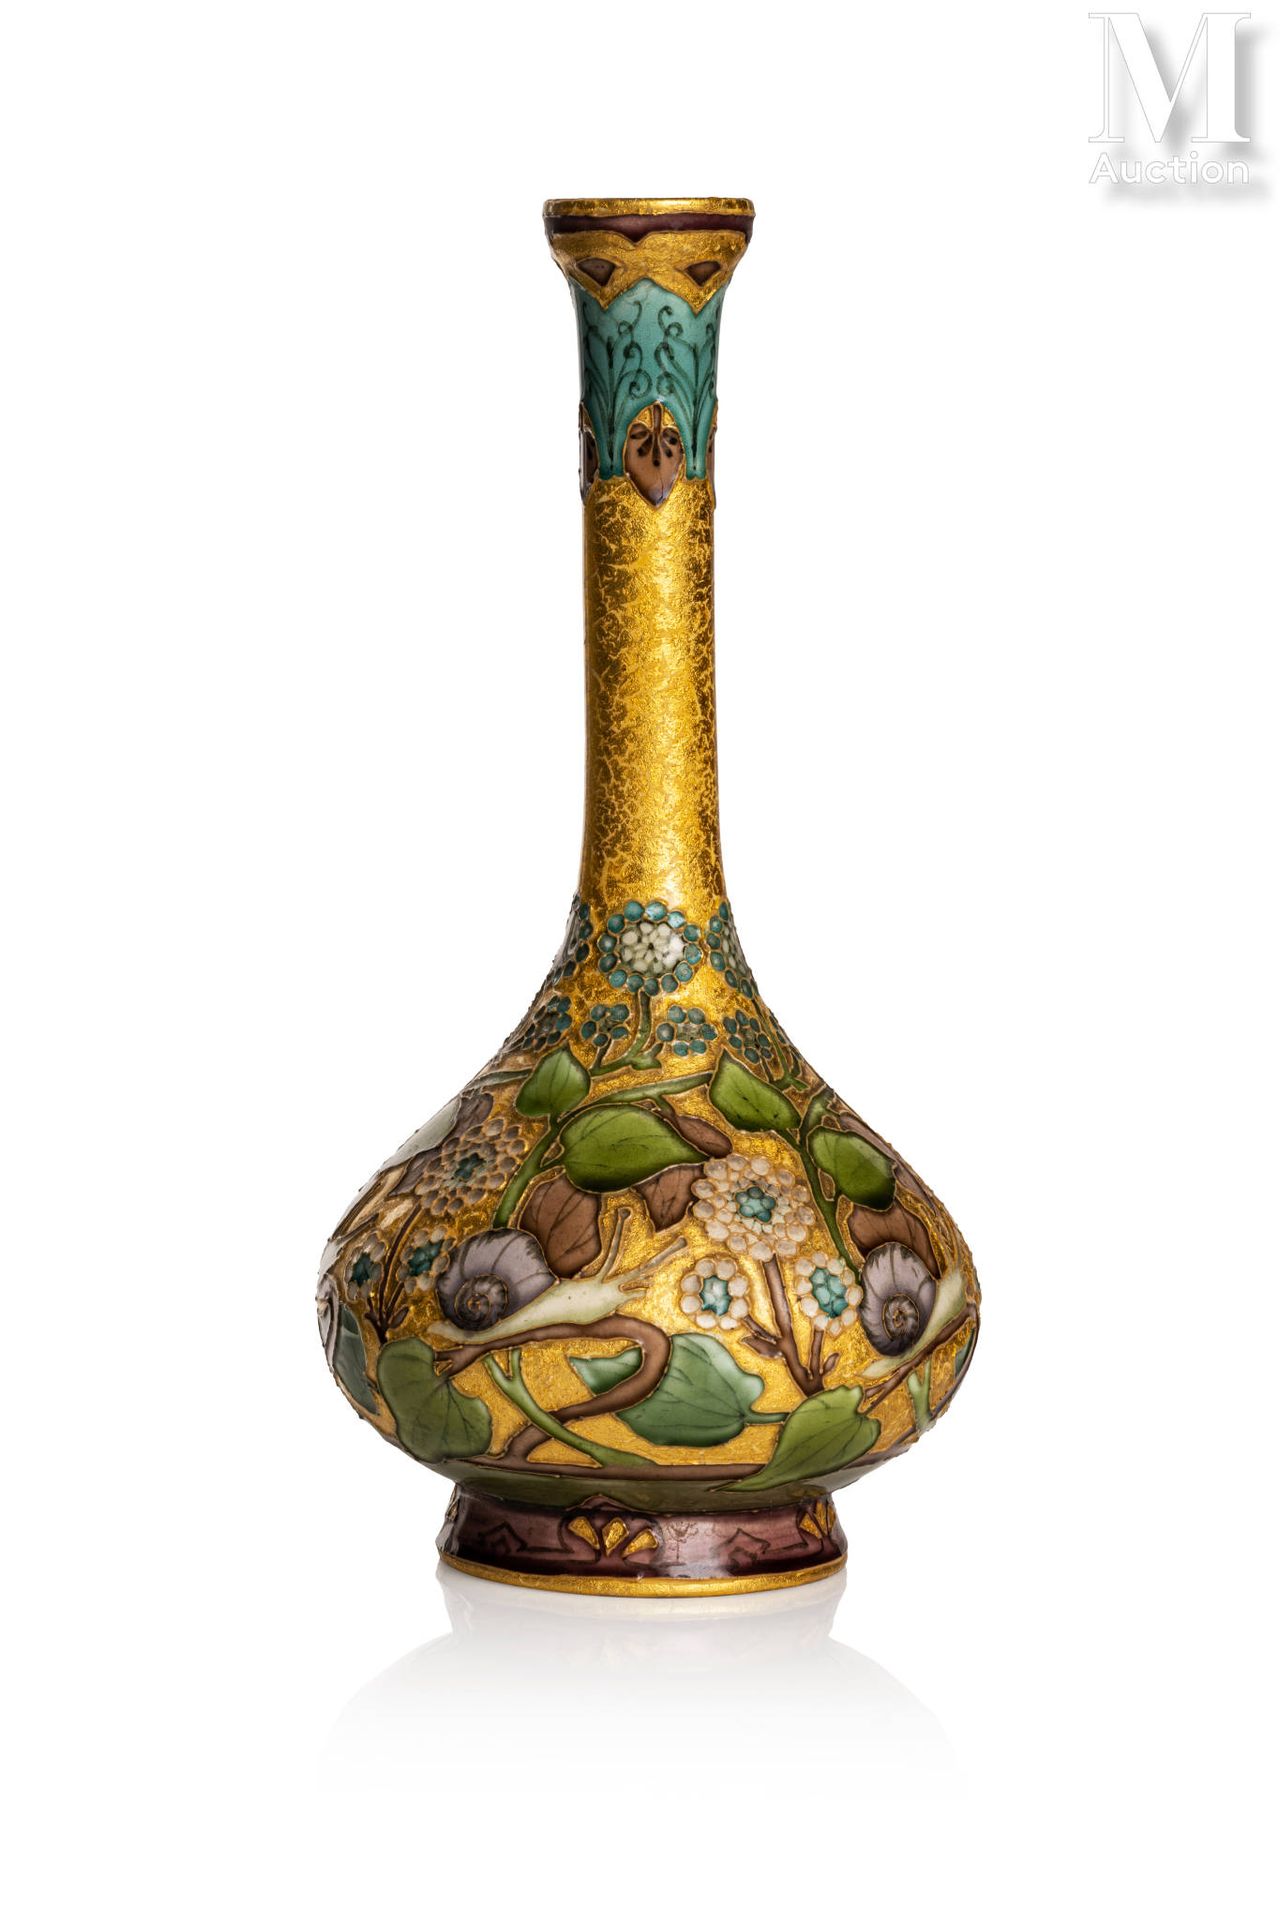 一个长颈的釉面陶瓷花瓶。 在金色的背景上装饰着花卉图案和蜗牛。 签有